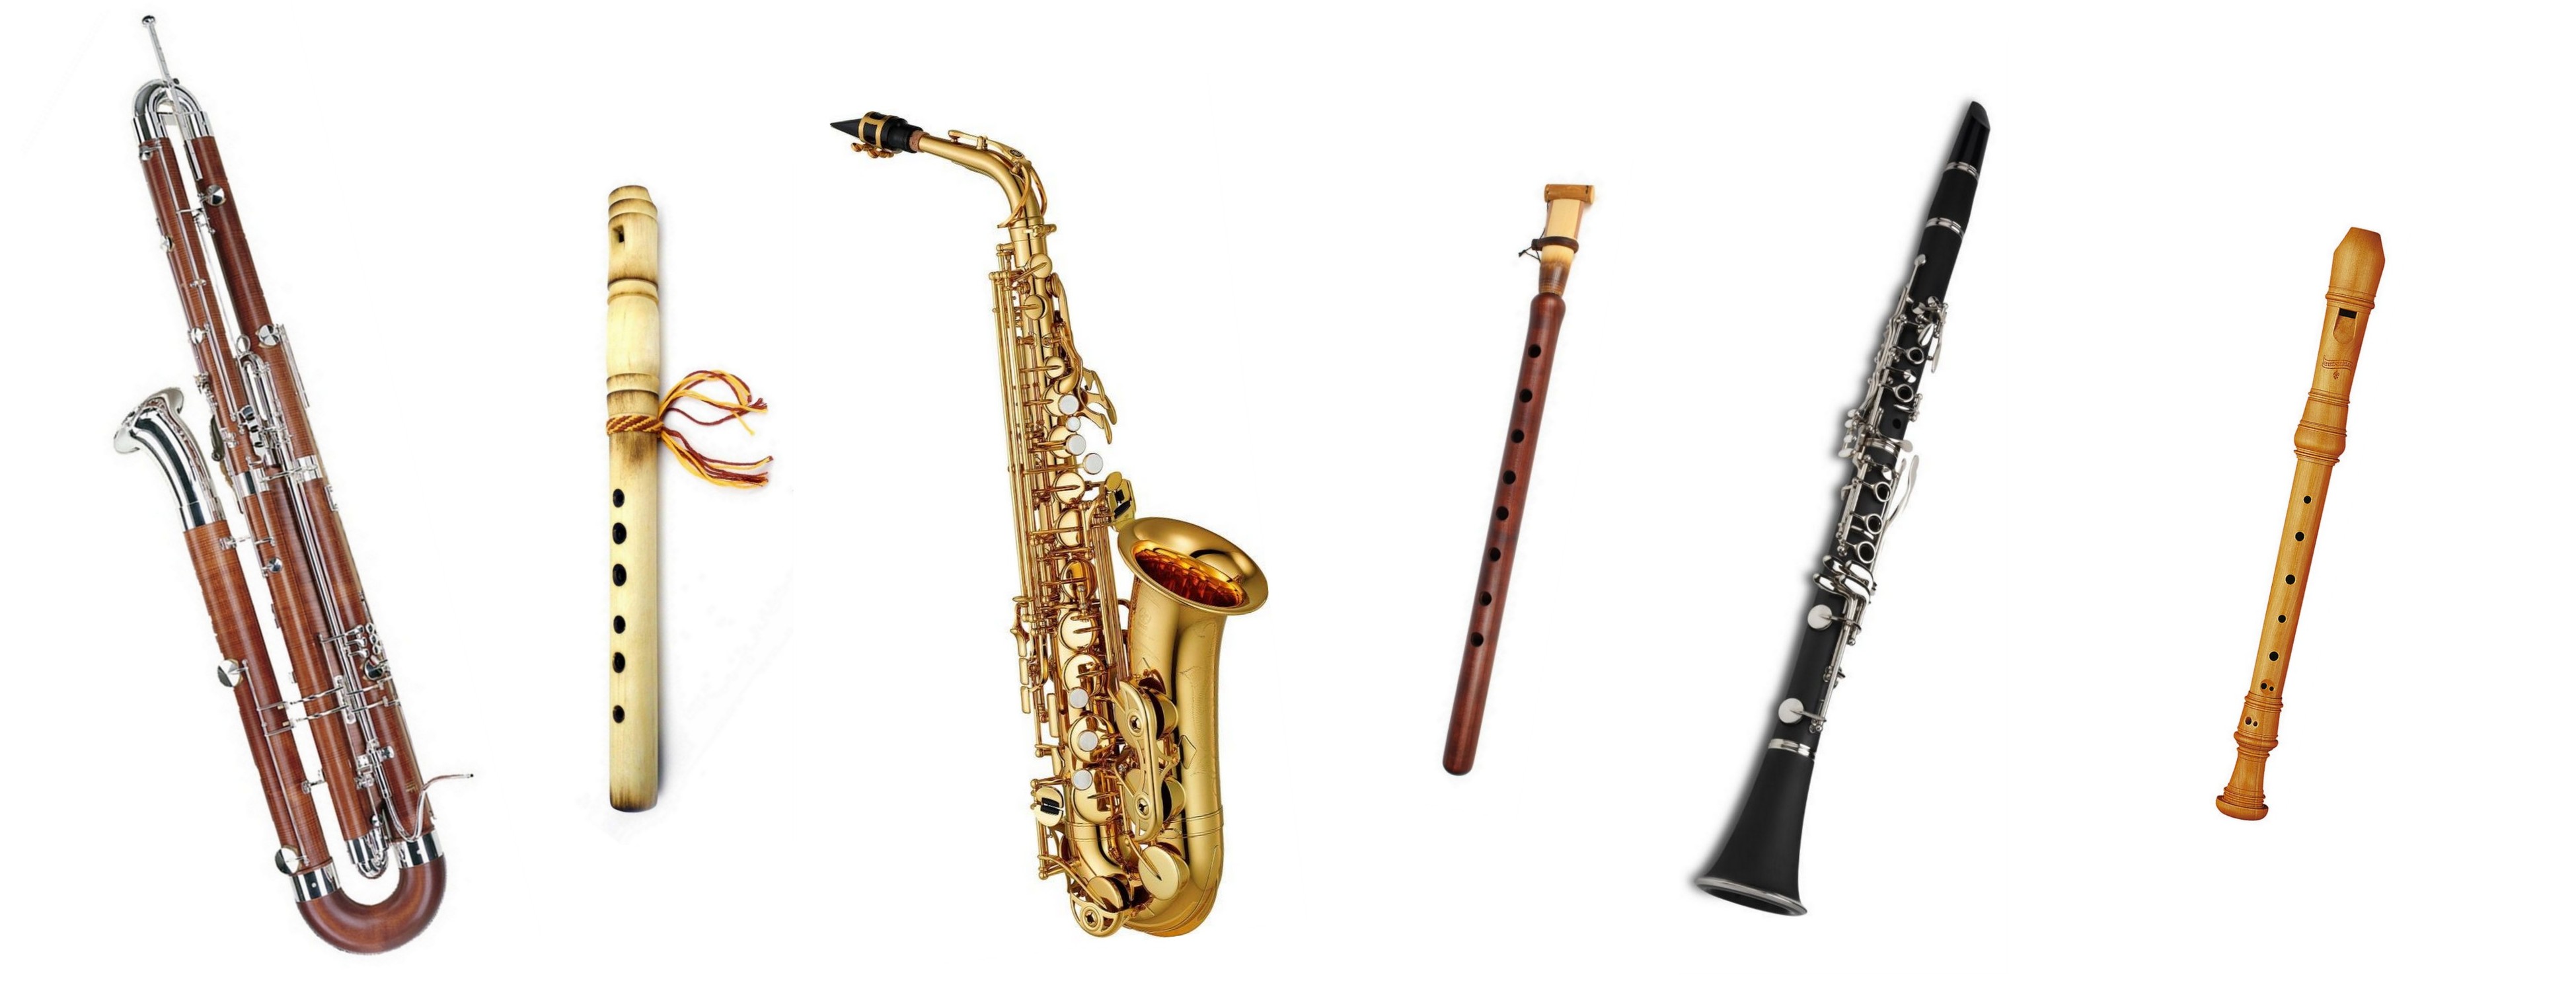 Кларнет тромбон. Флейта гобой кларнет Фагот саксофон. Фагот духовой музыкальный инструмент. Валторна гобой кларнет Фагот флейта. Труба флейта саксофон кларнет тромбон.